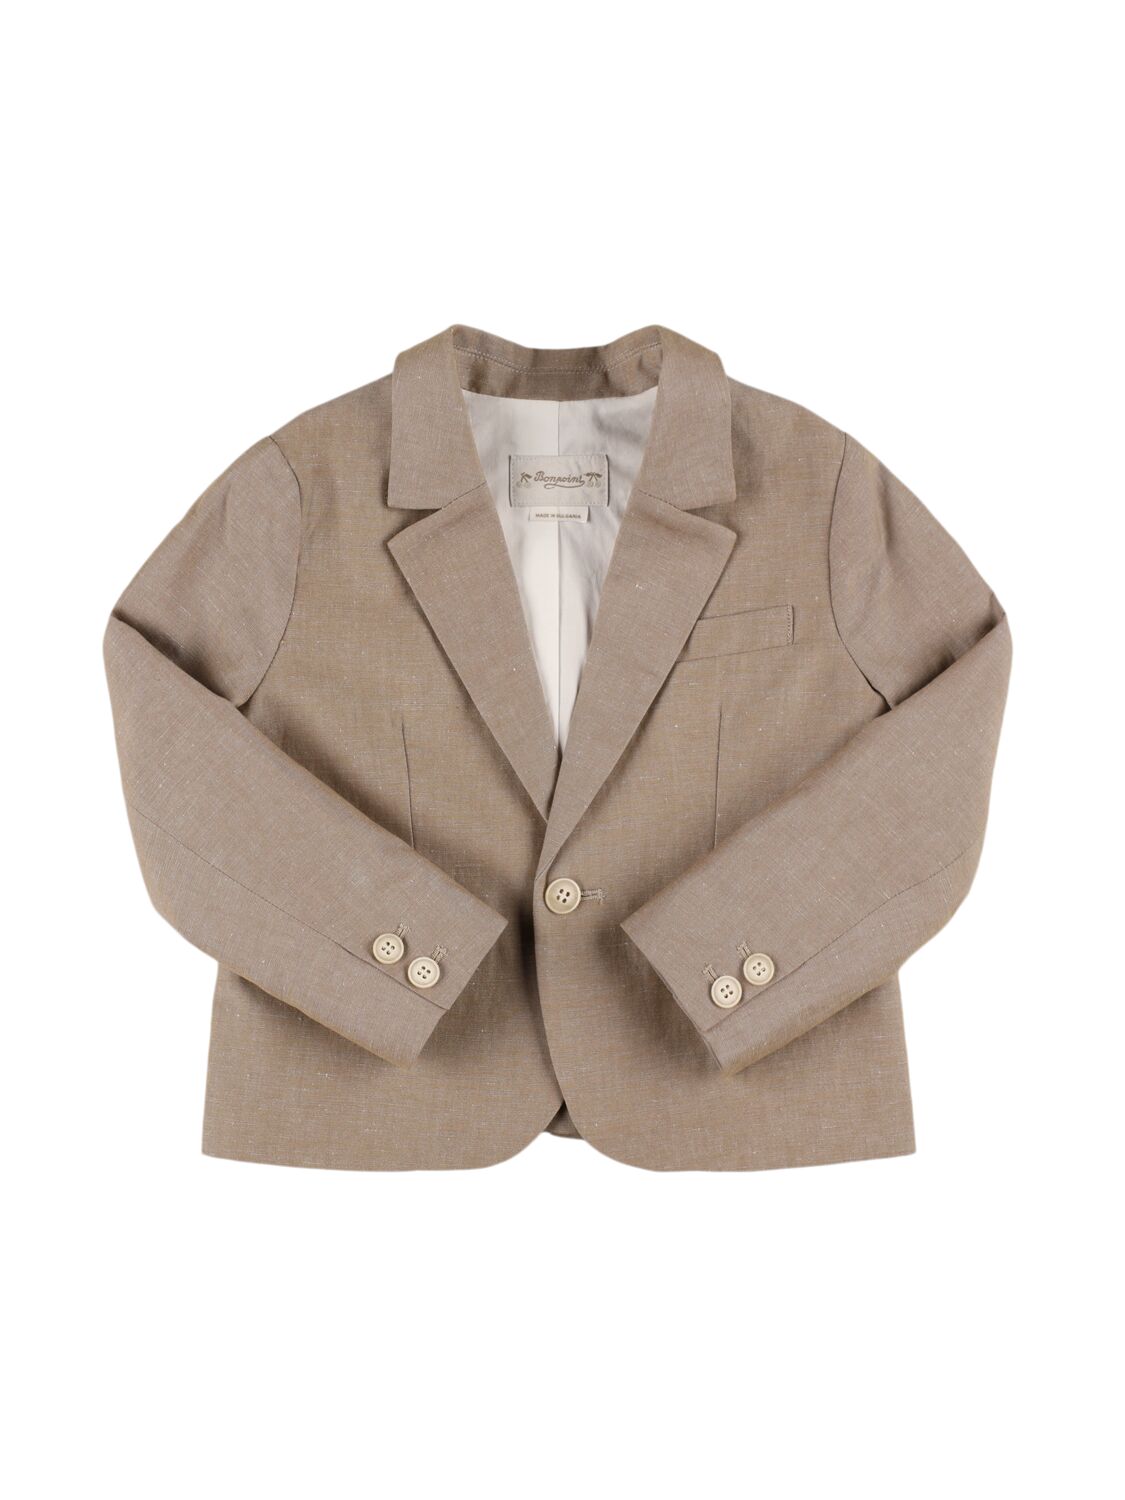 Bonpoint Kids' Linen & Cotton Blazer In Light Brown